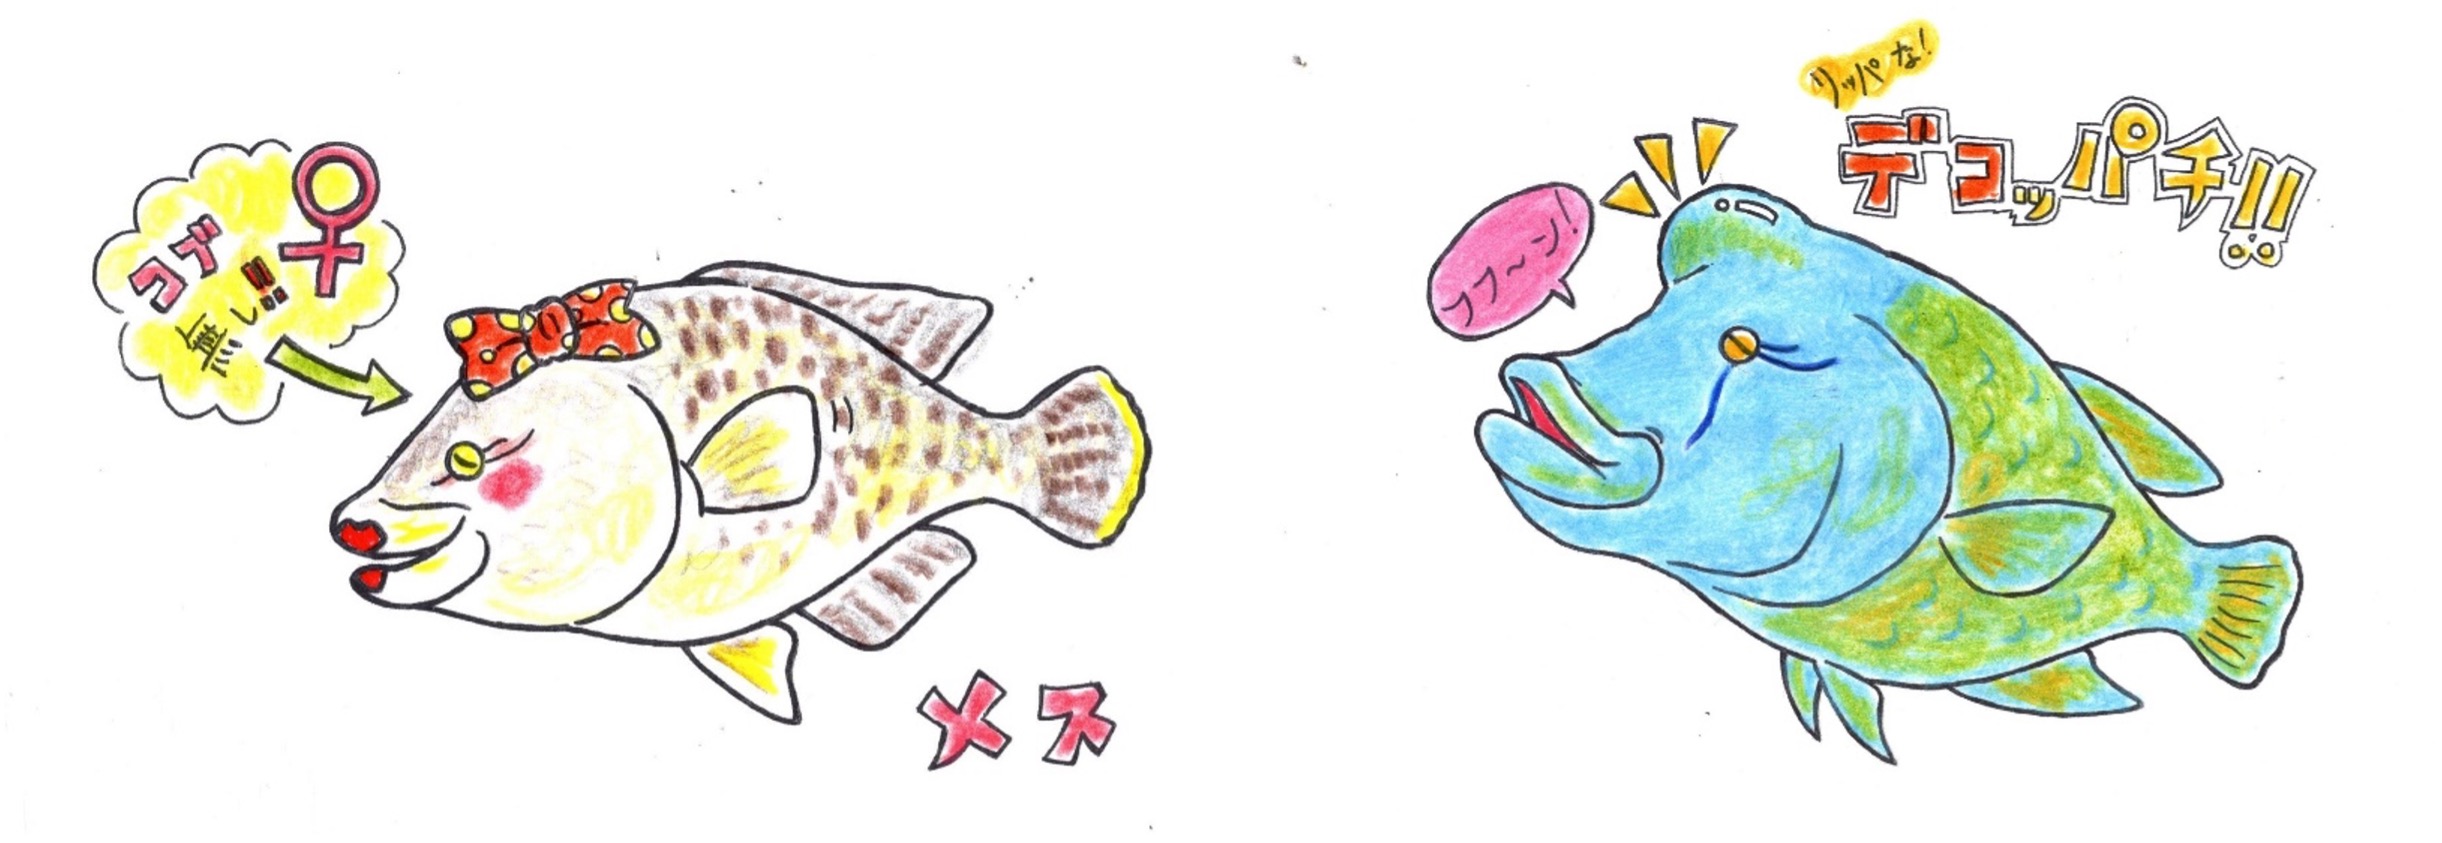 ナポレオンフィッシュは性転換する魚